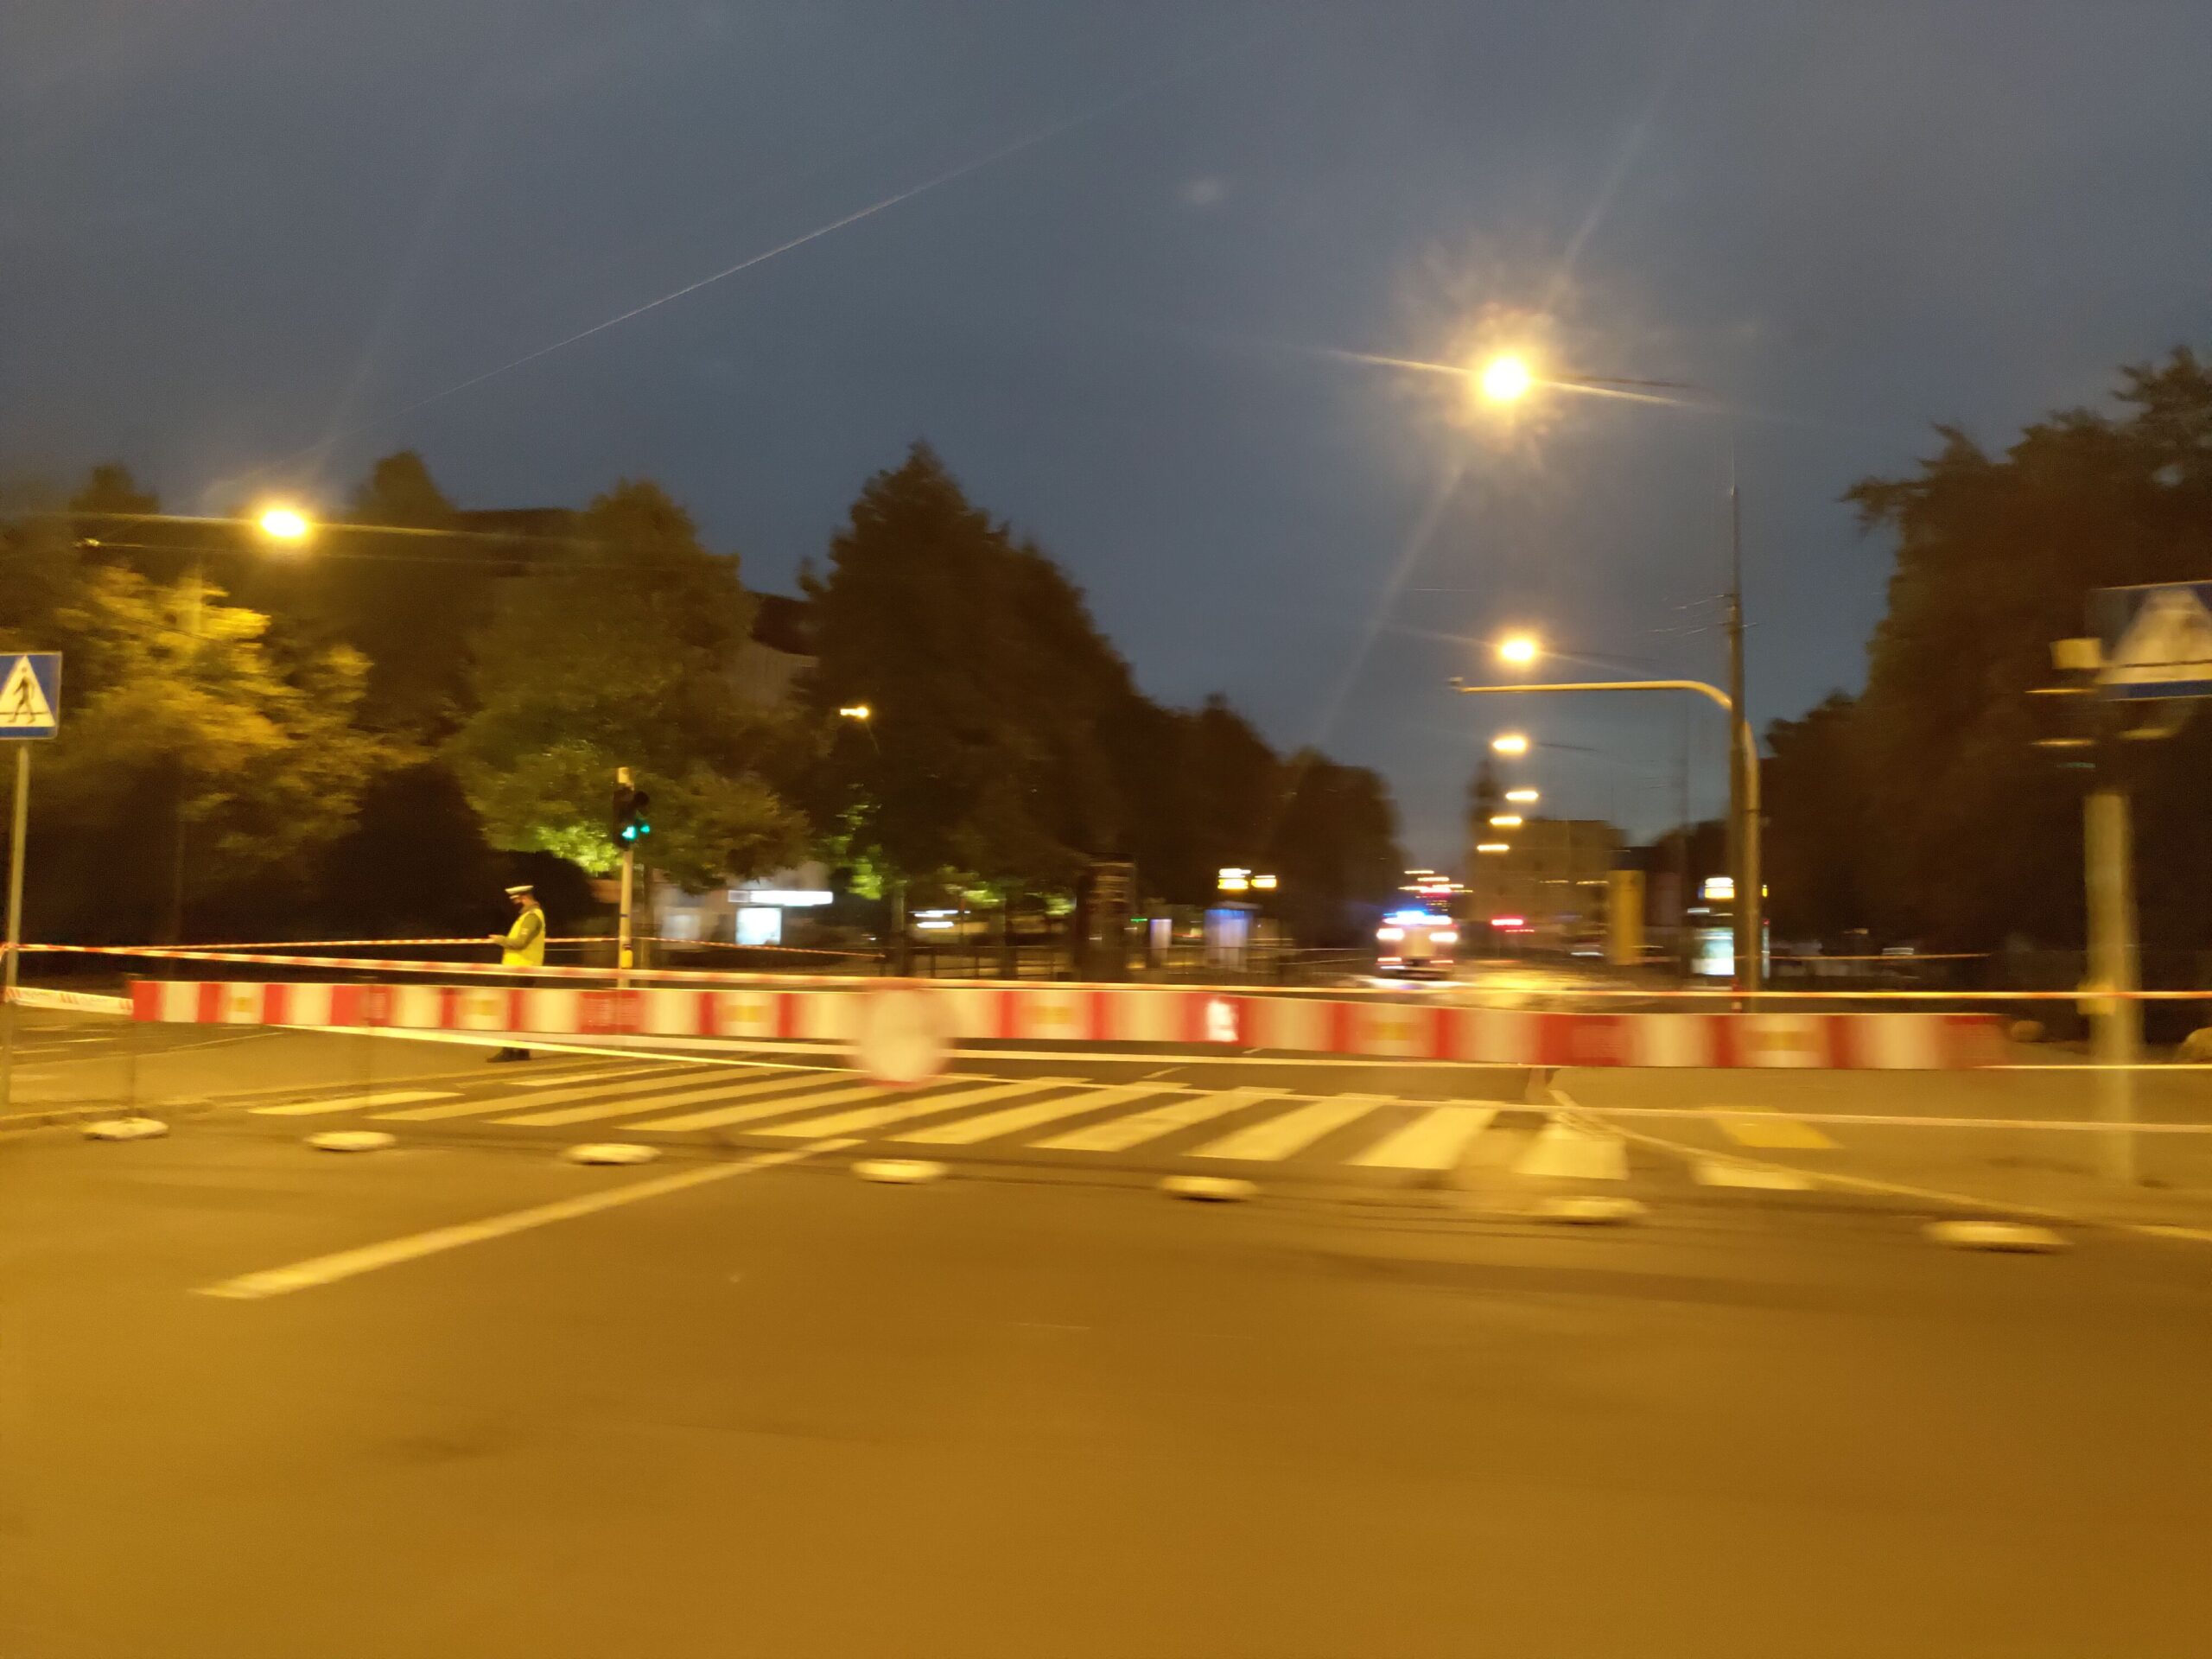 Awaria wodociągowa na ul. Strzeleckiej – droga zamknięta dla ruchu kołowego w obu kierunkach! (Aktualizacja)